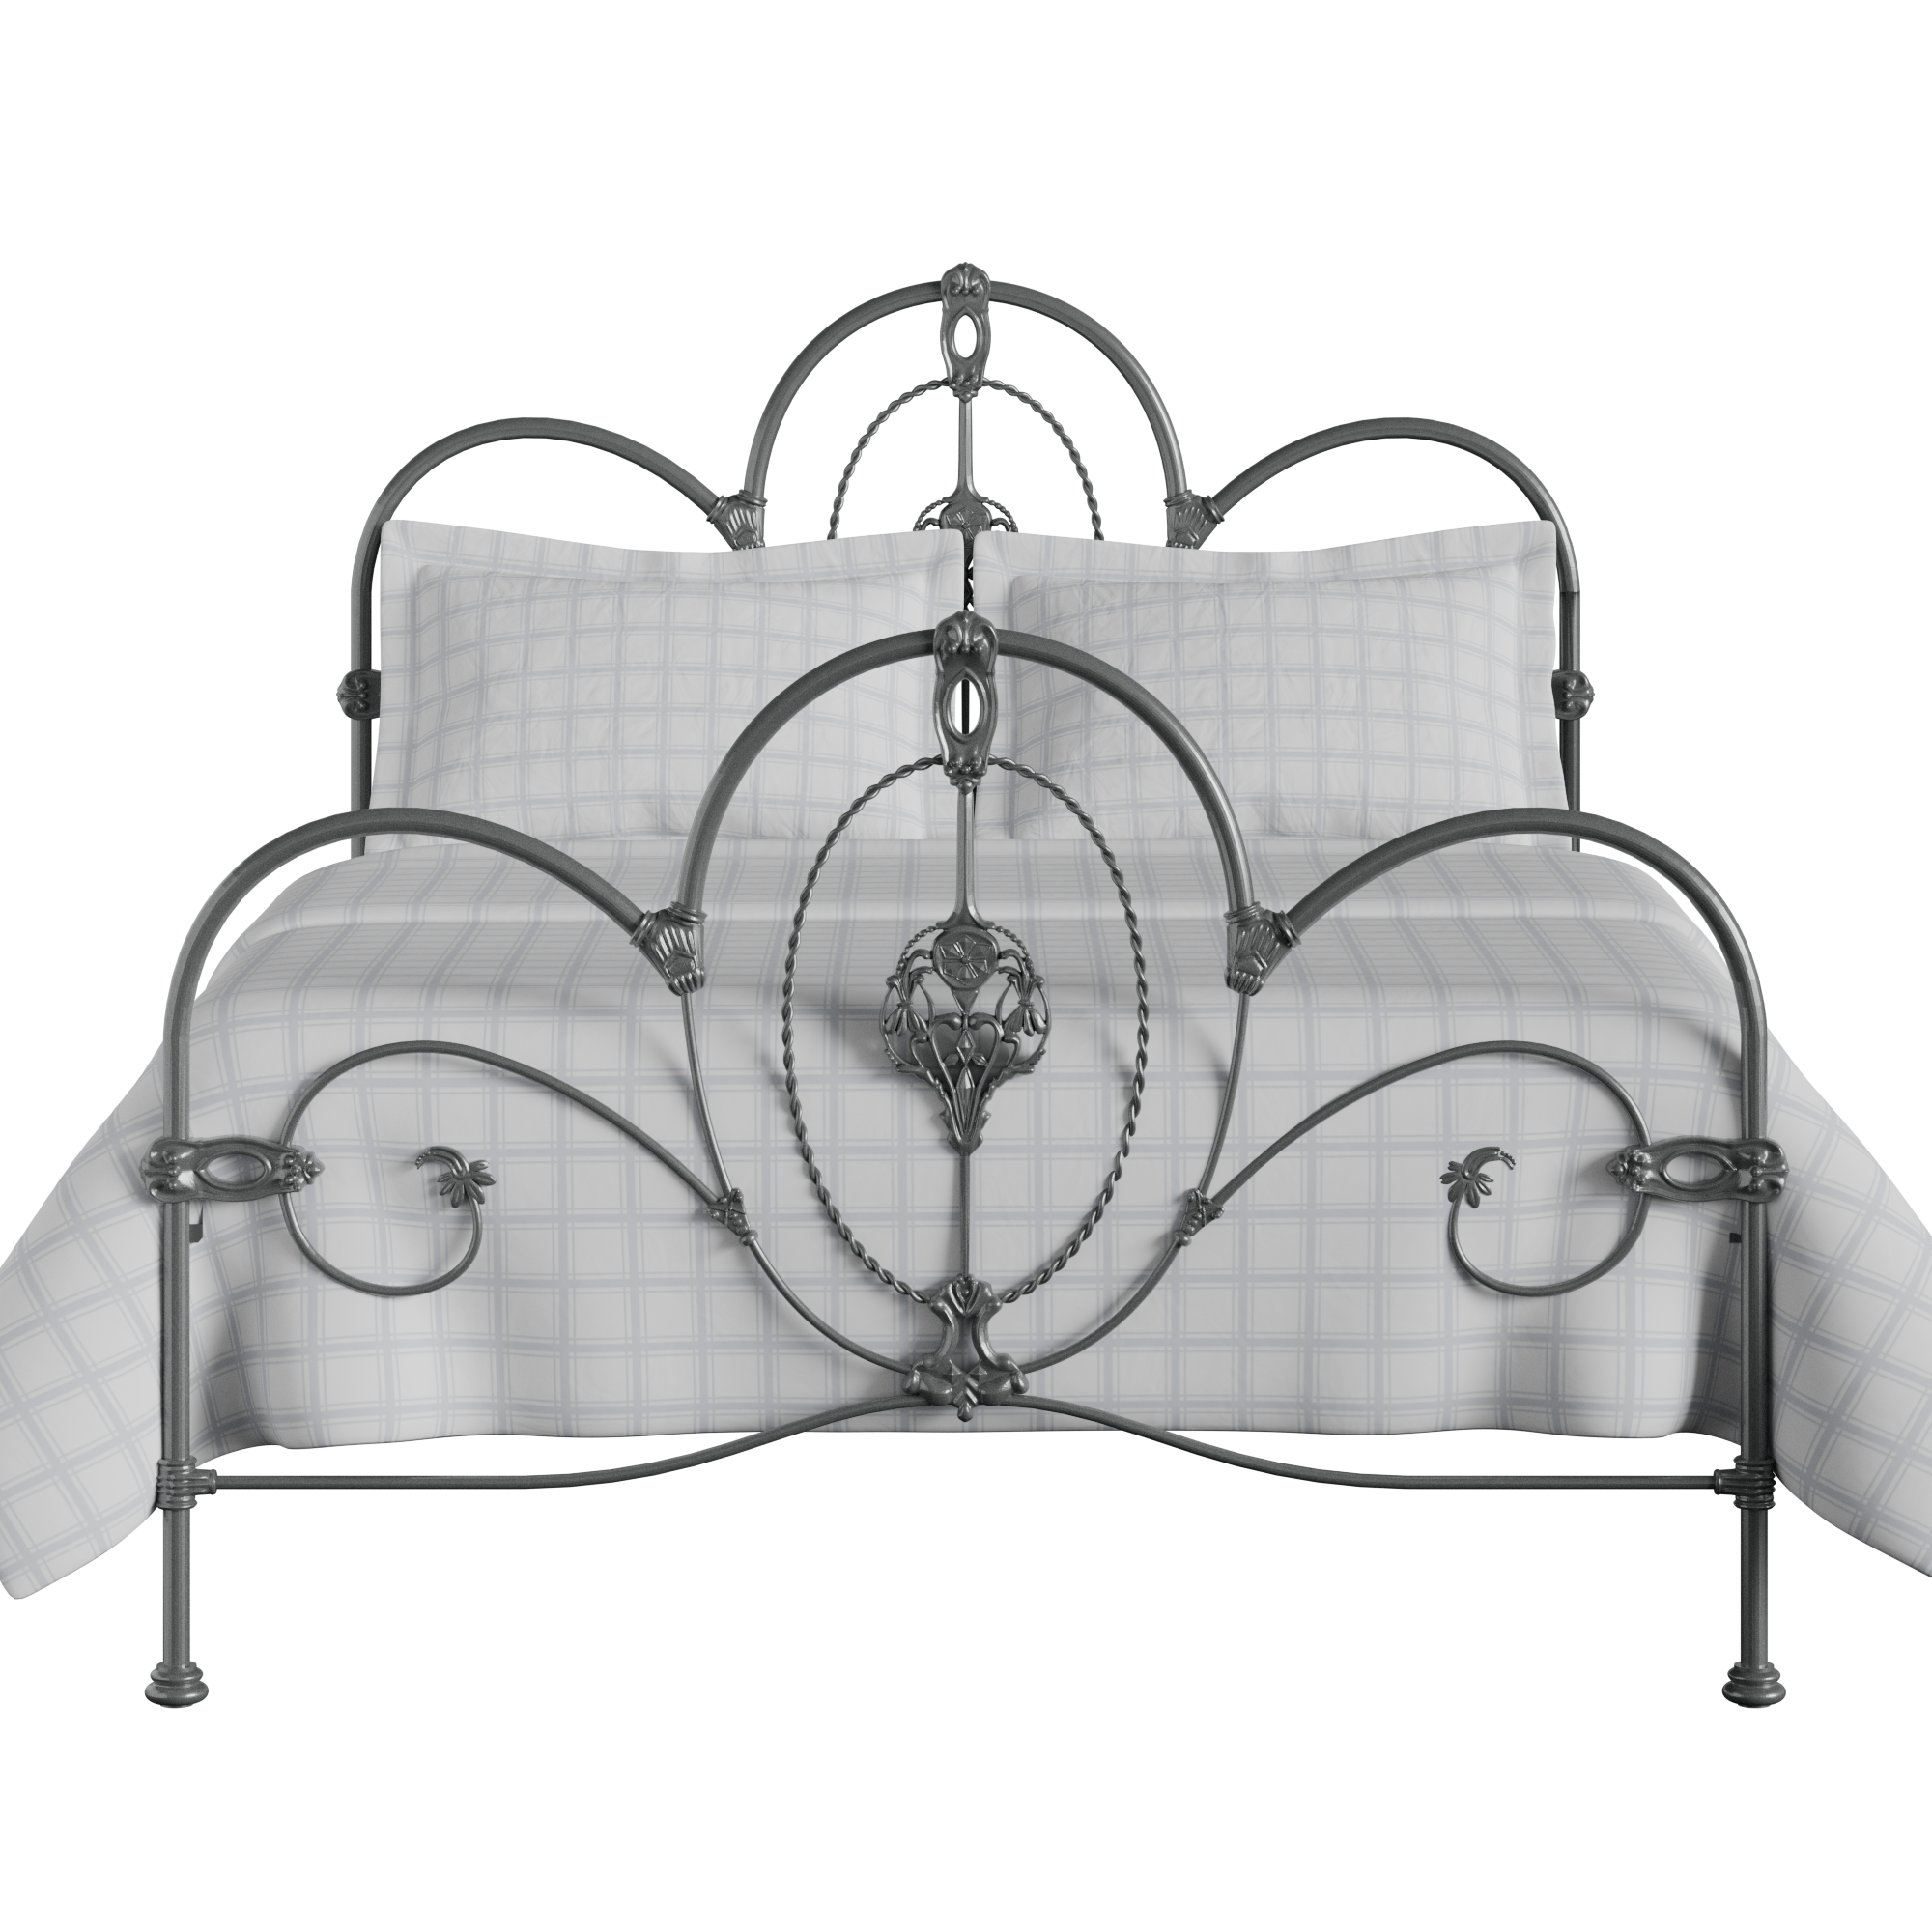 Ballina iron/metal bed in pewter